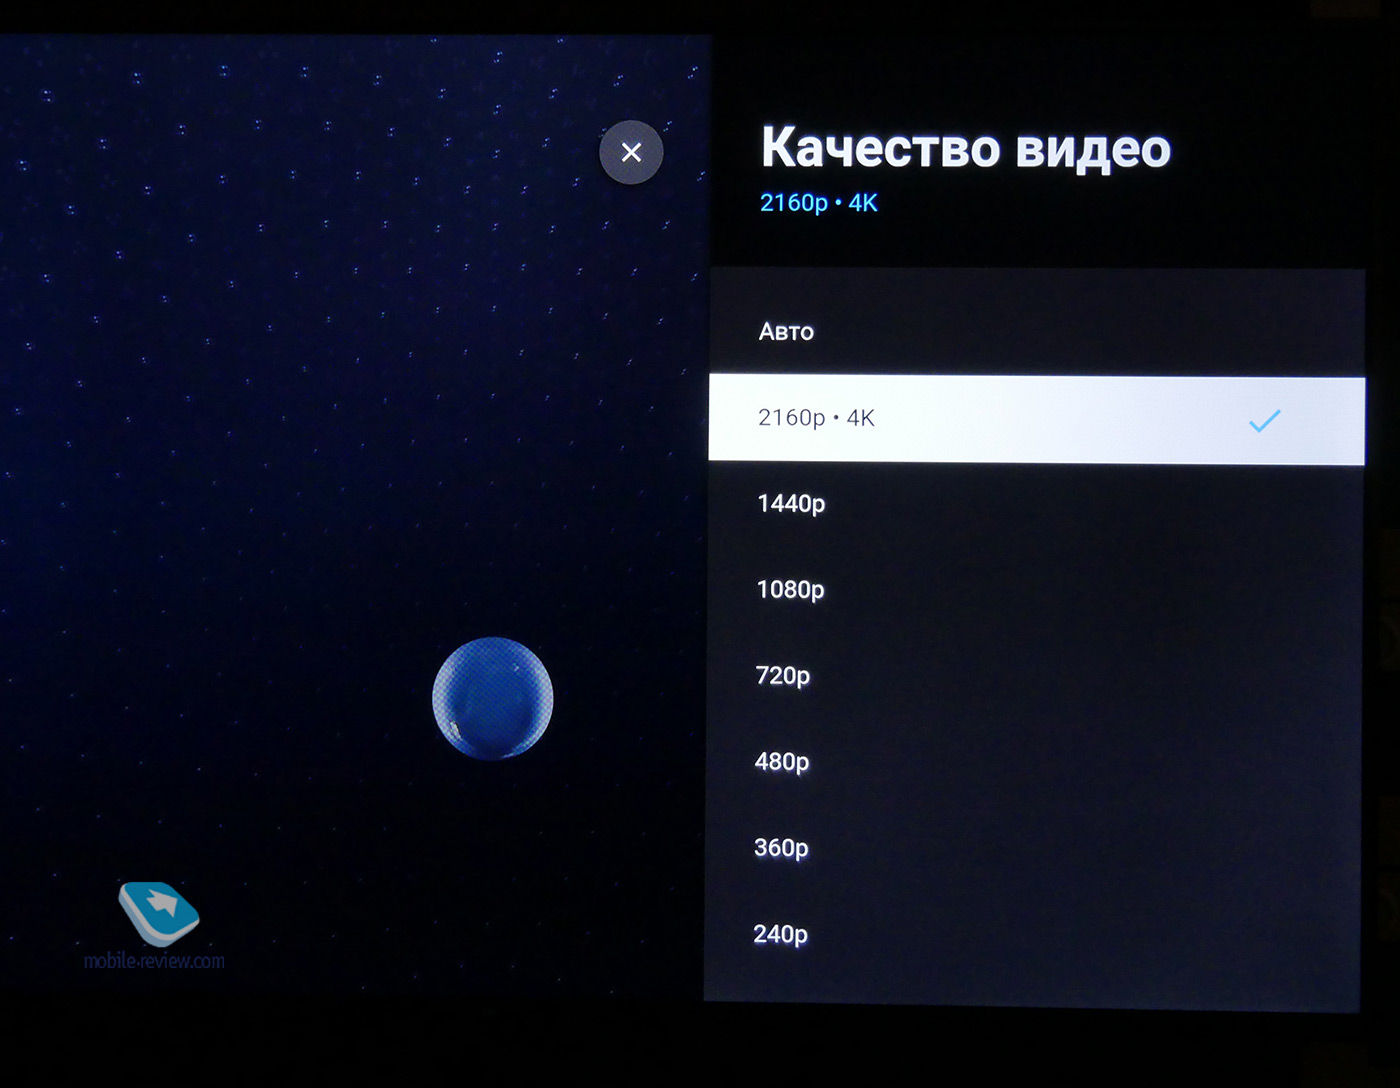 Опыт использования Xiaomi Mi TV 4S на 55 дюймов